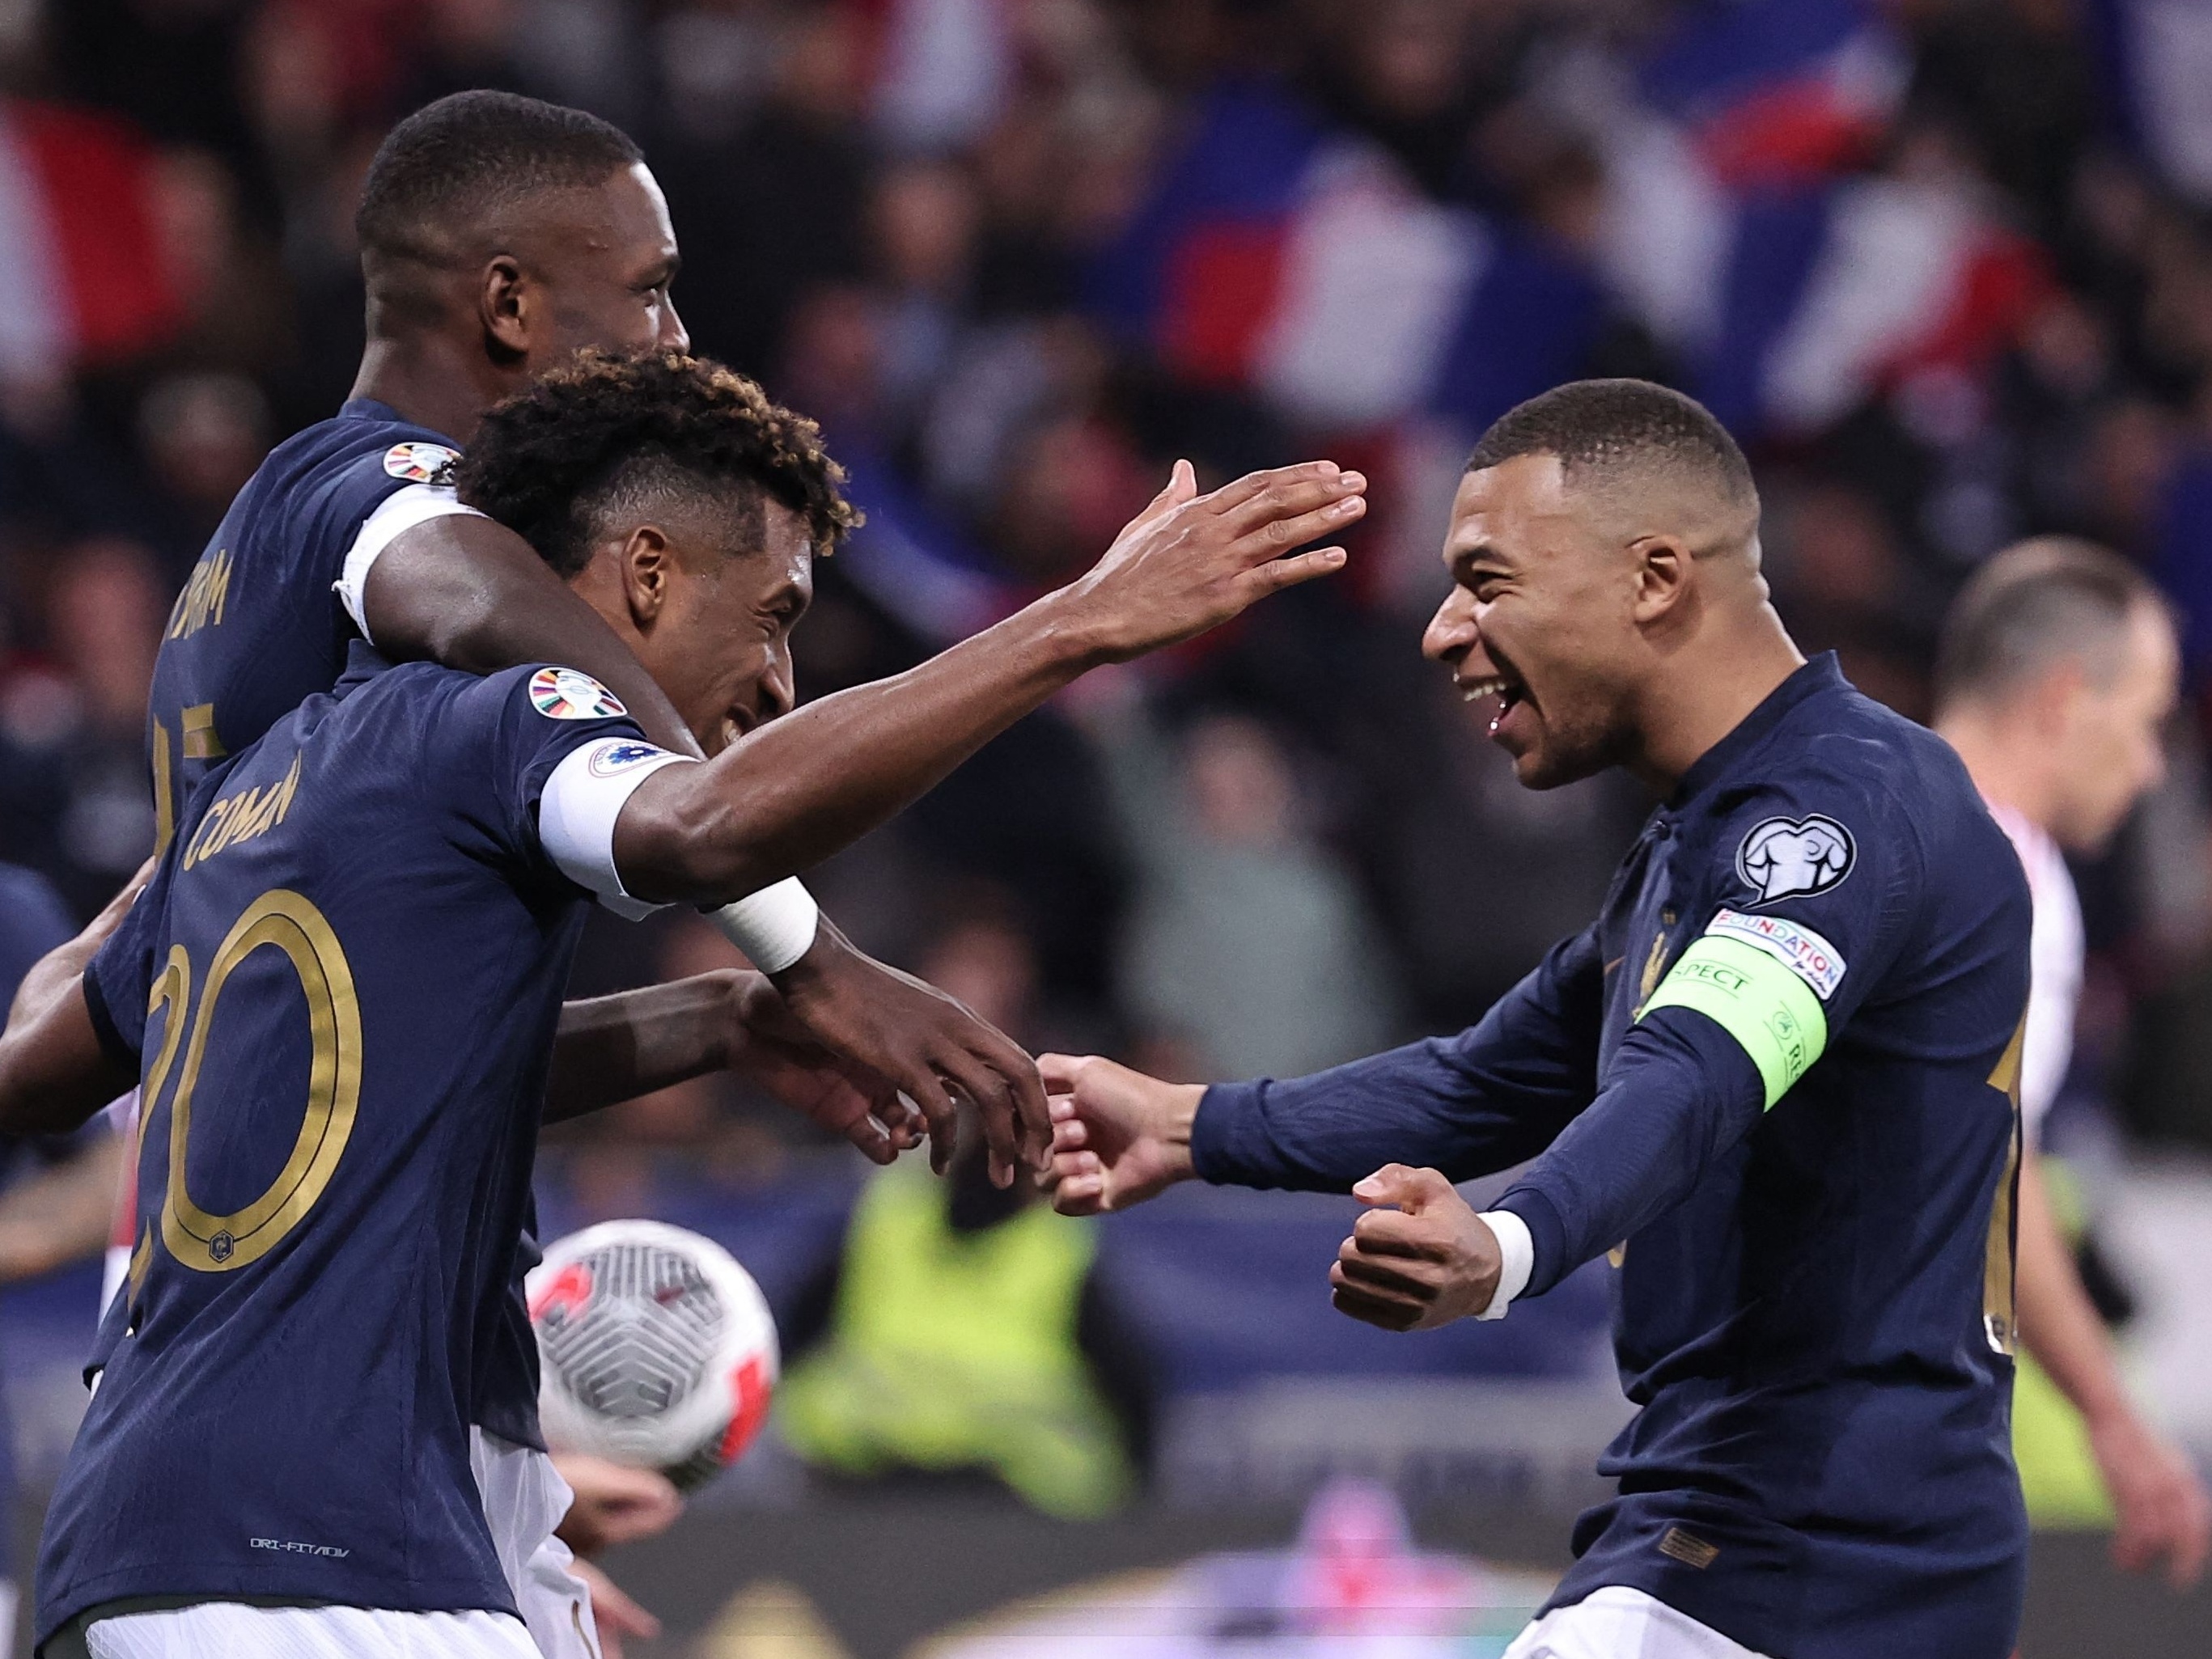 Quem tem mais jogos pela França na história da seleção?